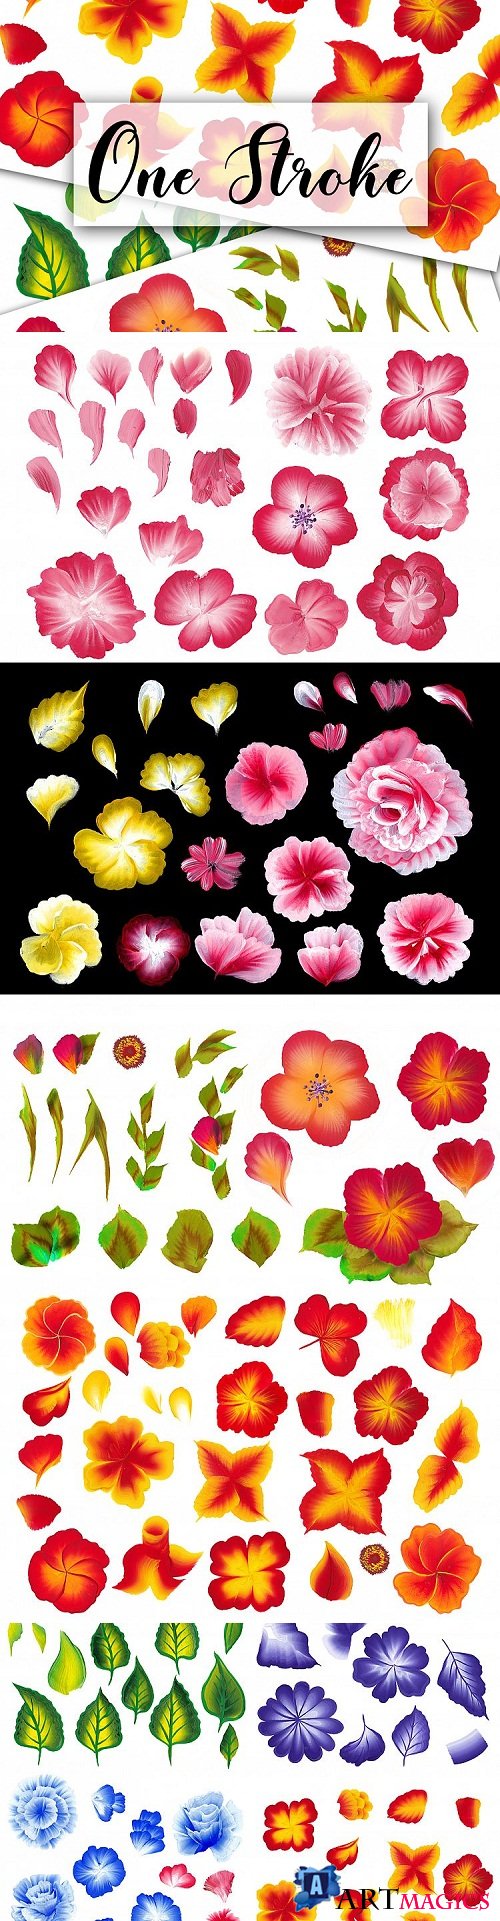 150 One stroke flowers style - 201233